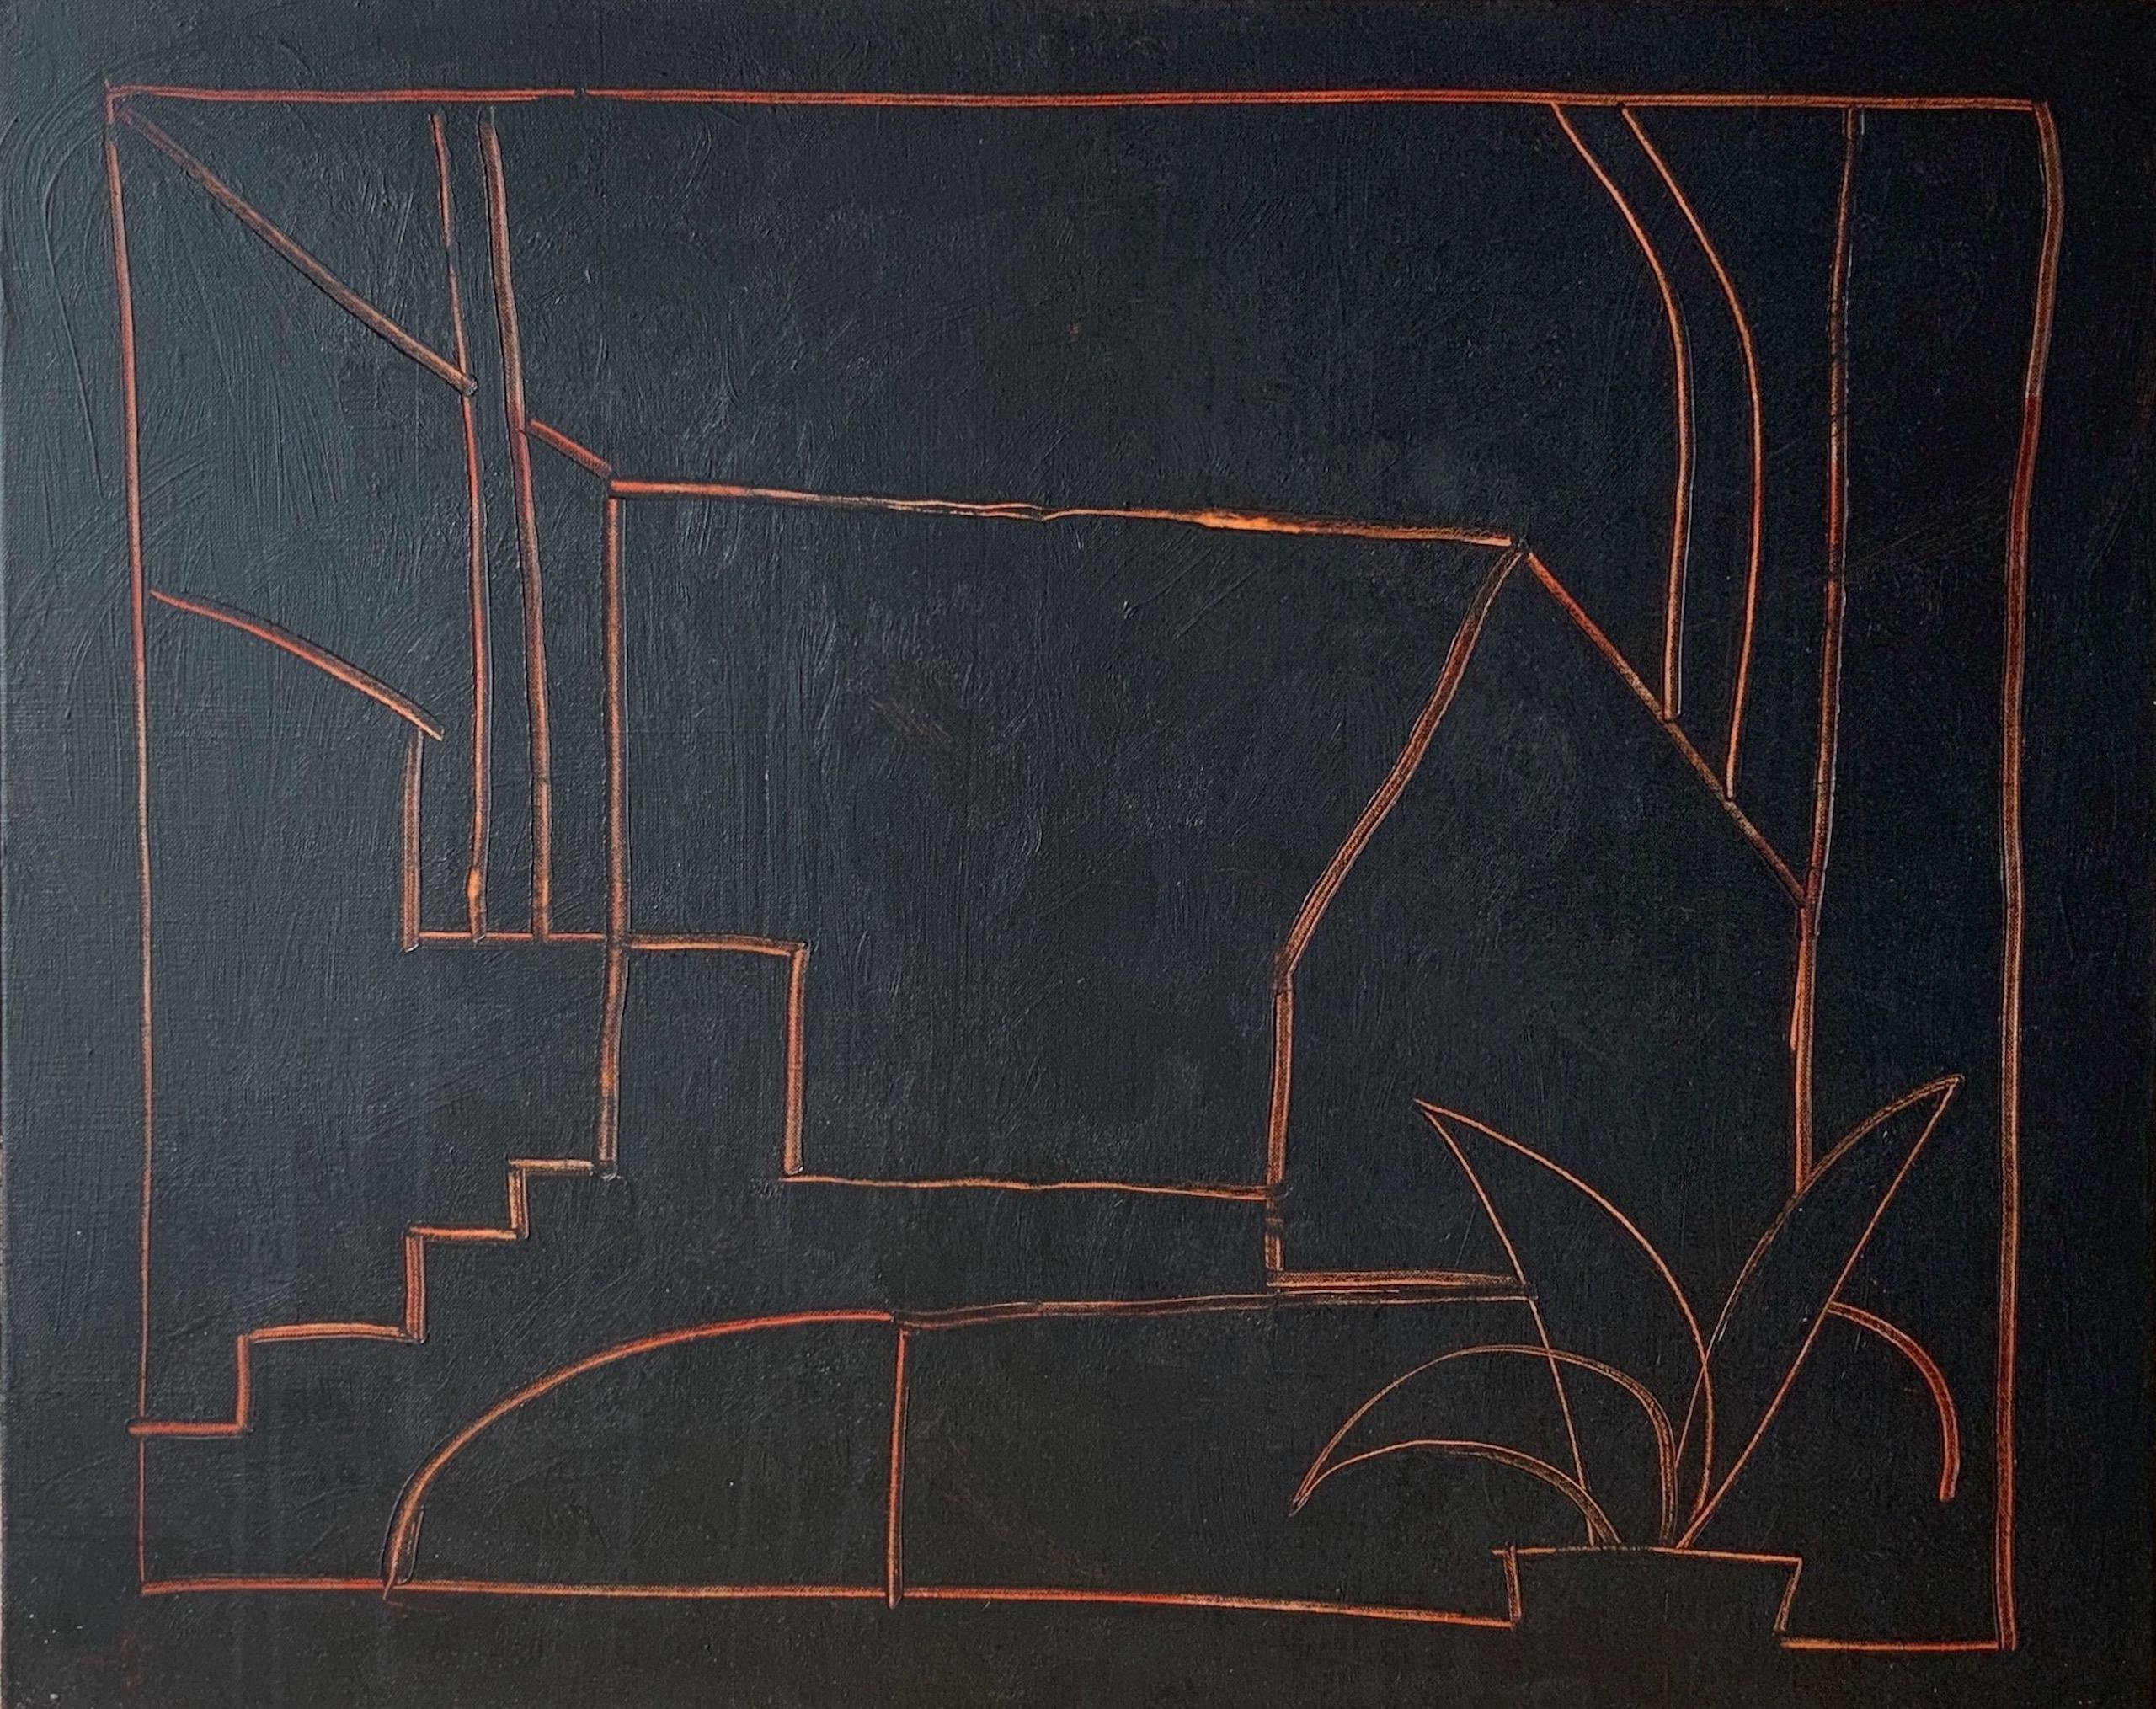 POMERIGGIO ist ein einzigartiges Gemälde des zeitgenössischen Künstlers Ramon Enrich in Acryl auf Leinwand mit den Maßen 96 × 120 cm (37,8 × 47,2 in). Die Abmessungen des gerahmten Kunstwerks betragen 100 cm x 125 cm.
Das Kunstwerk ist signiert,